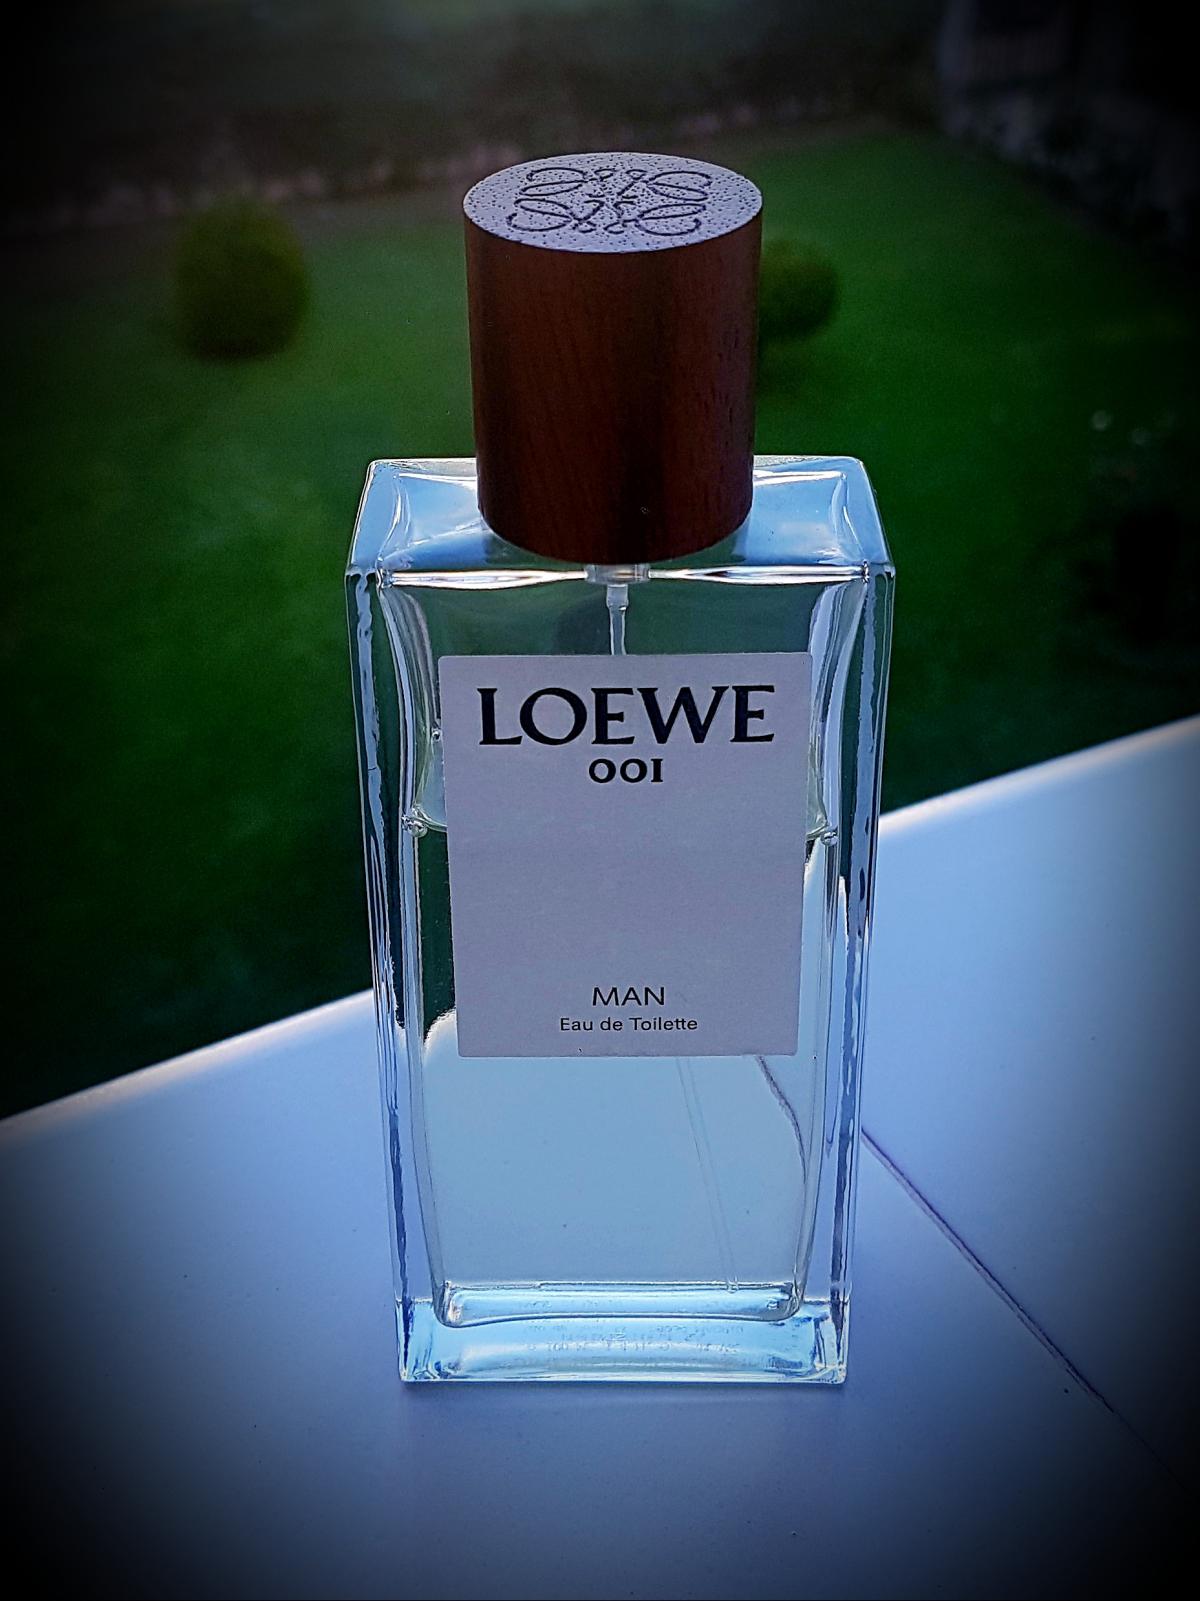 Loewe 001 Man EDT Loewe Kolonjska voda - parfem za muškarce 2017